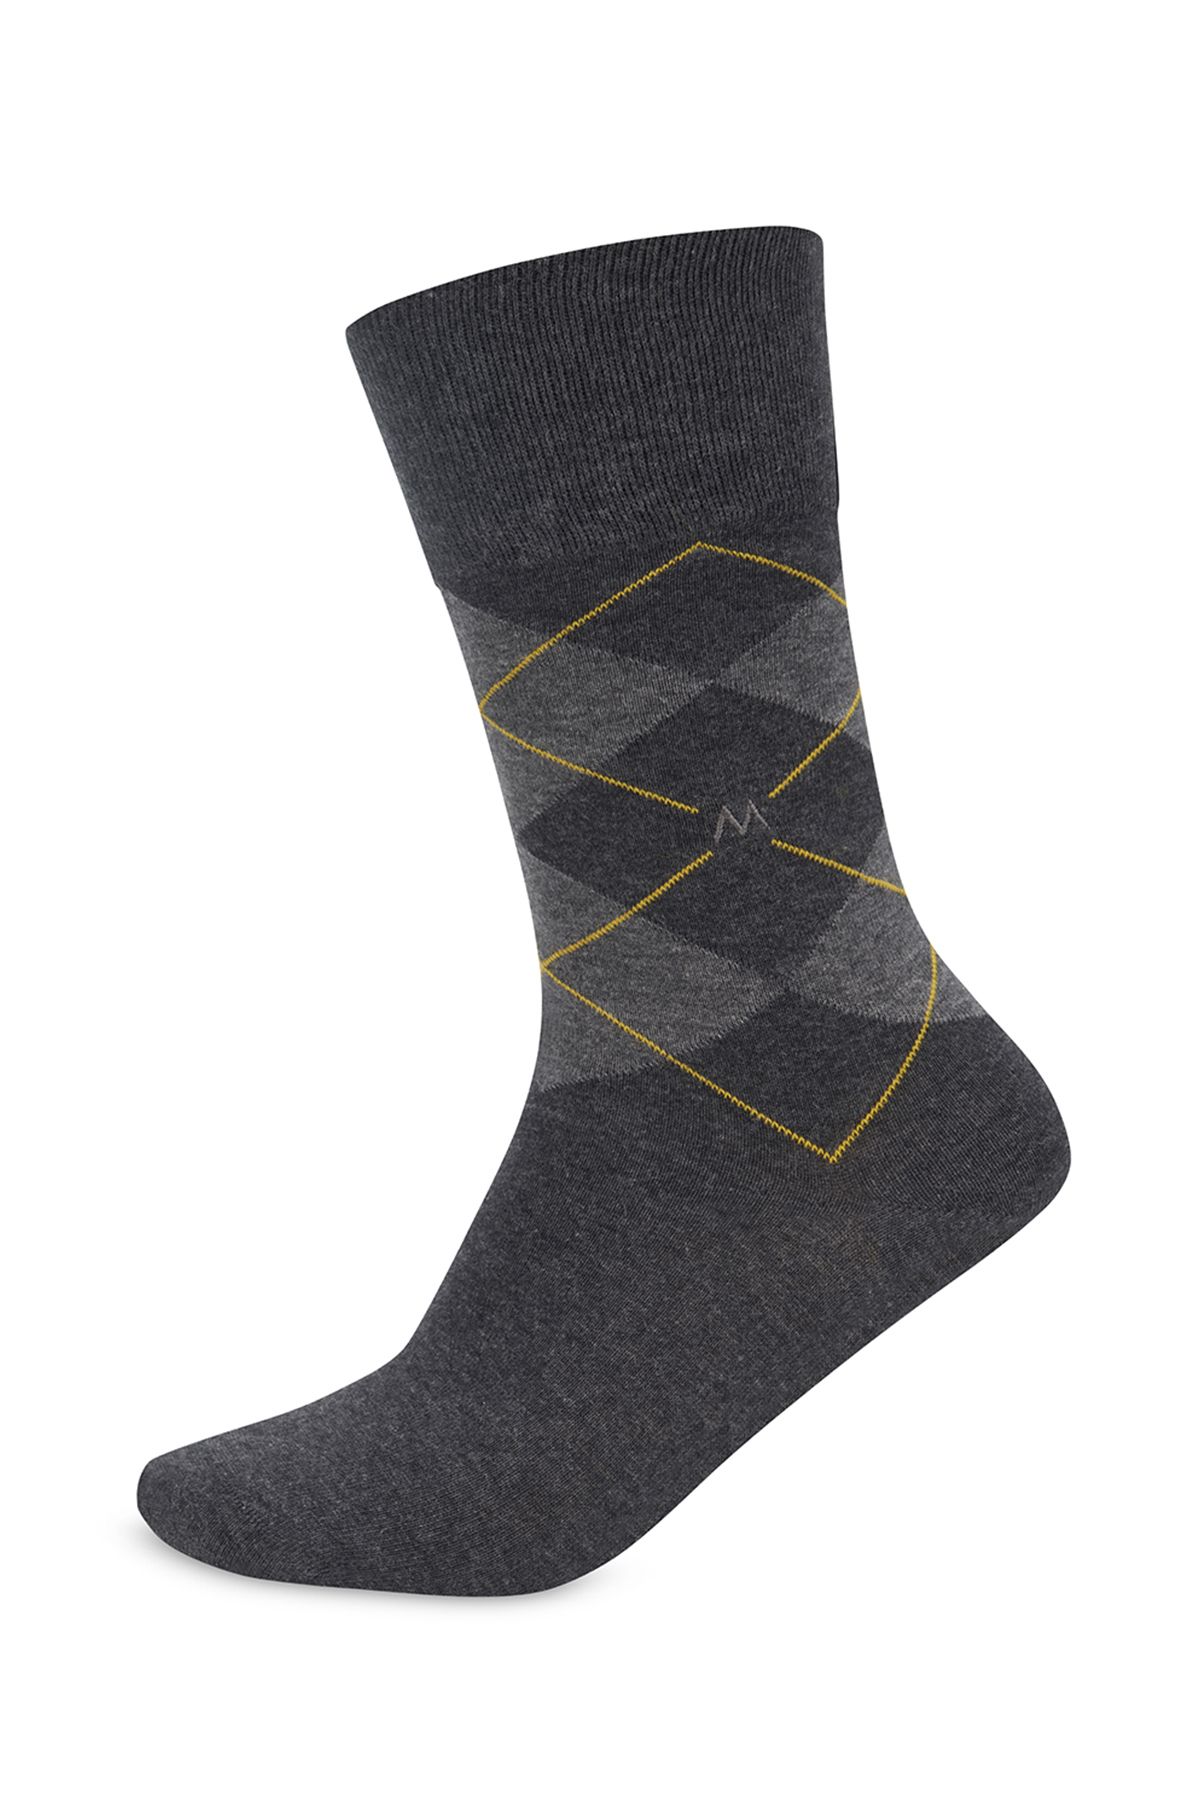 Hemington Antrasit Baklava Sarı Çizgili Pamuk Çorap